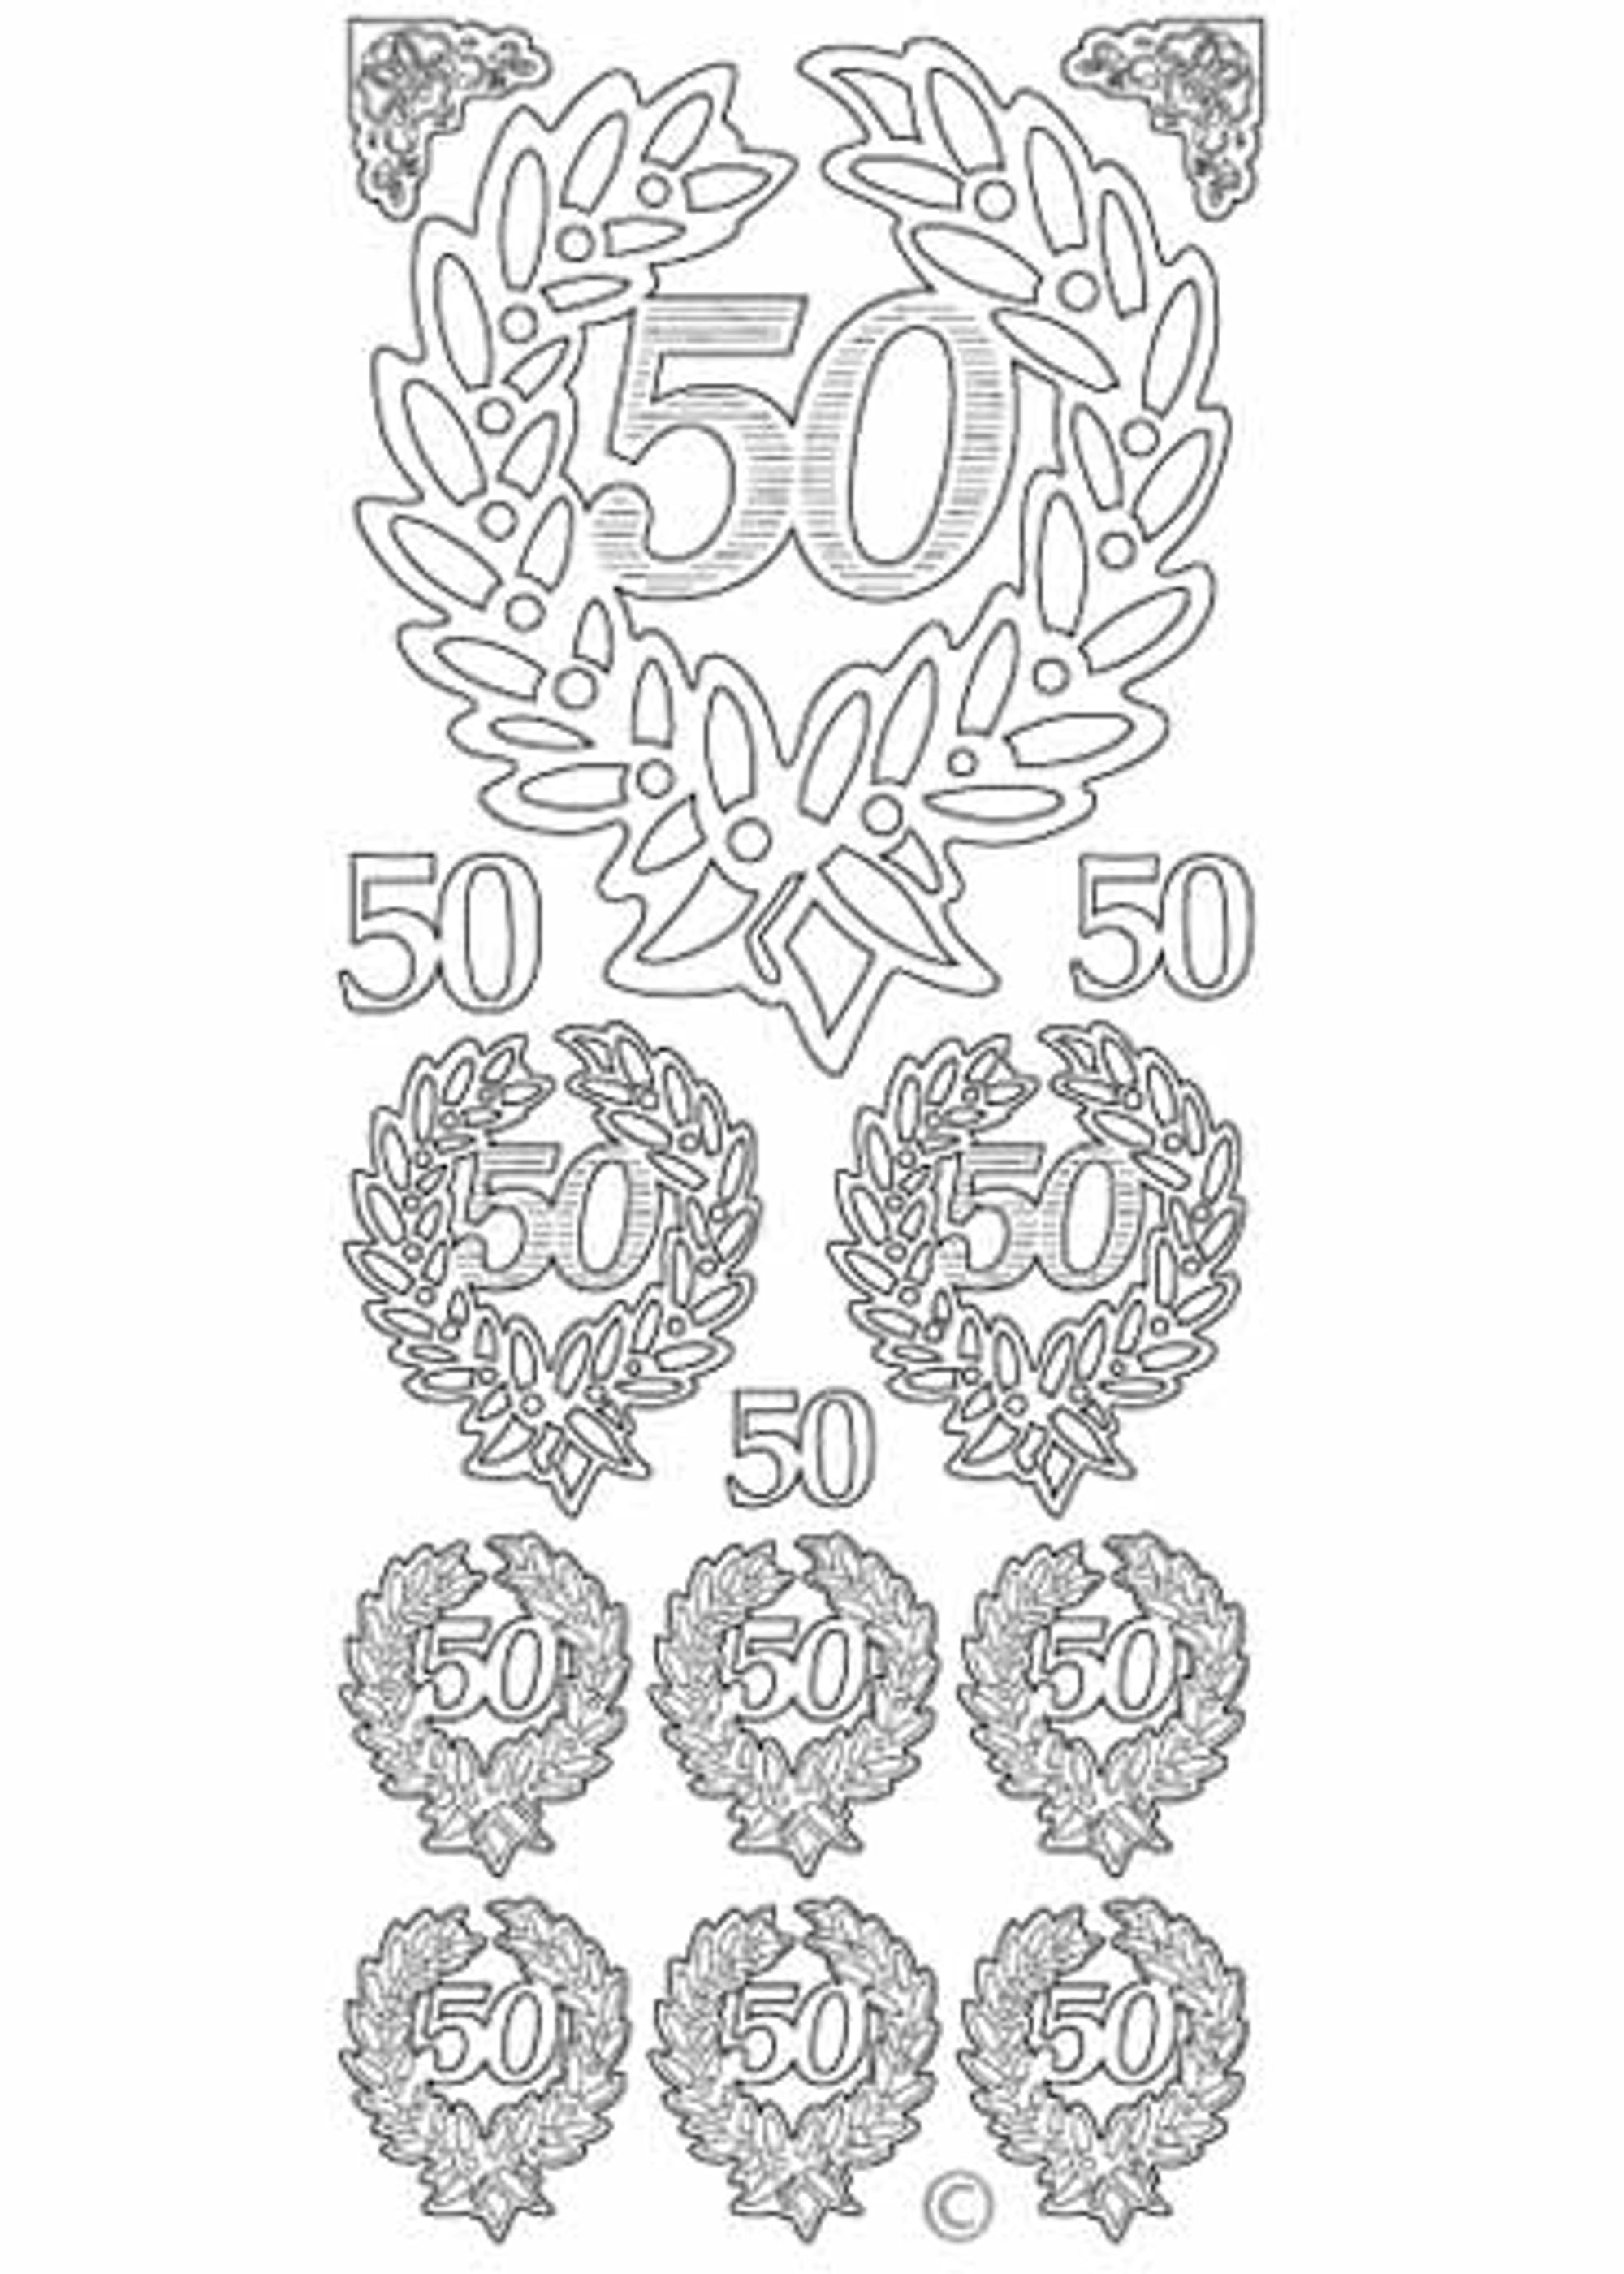 Deco Stickers - 50th Anniversary